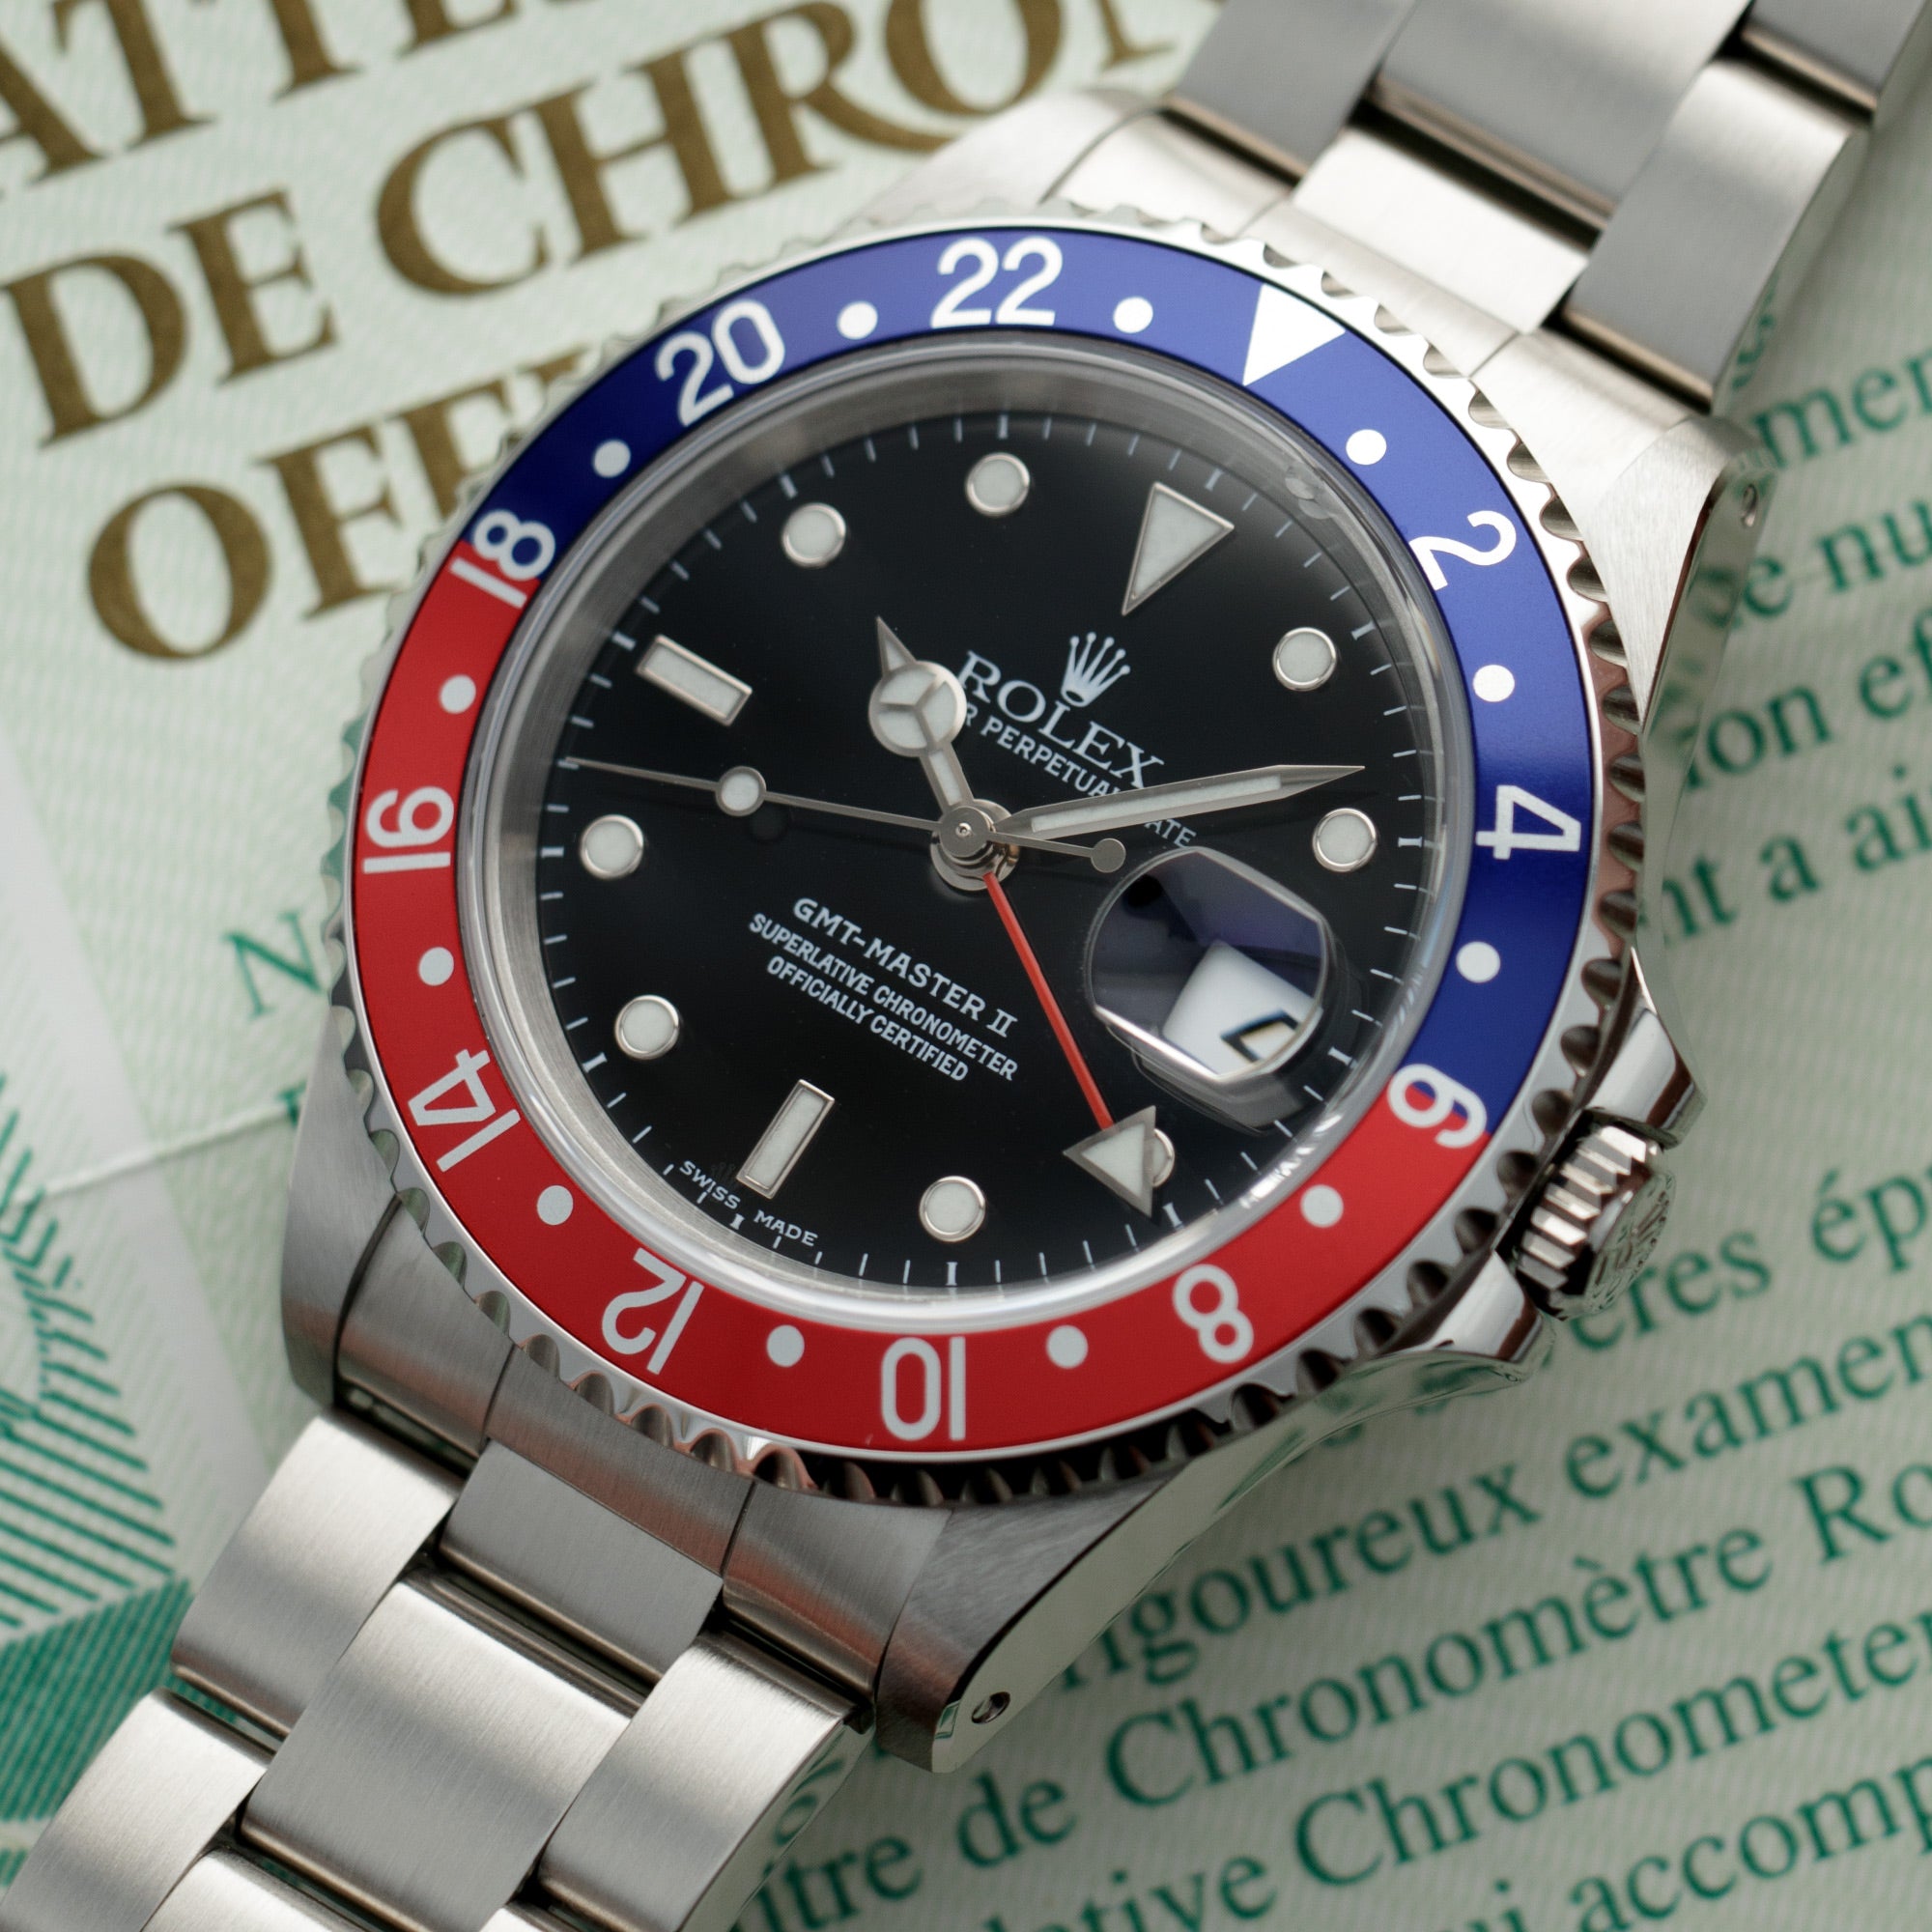 Rolex - Rolex Steel Pepsi GMT-Master Ref. 16710 with Original Warranty - The Keystone Watches